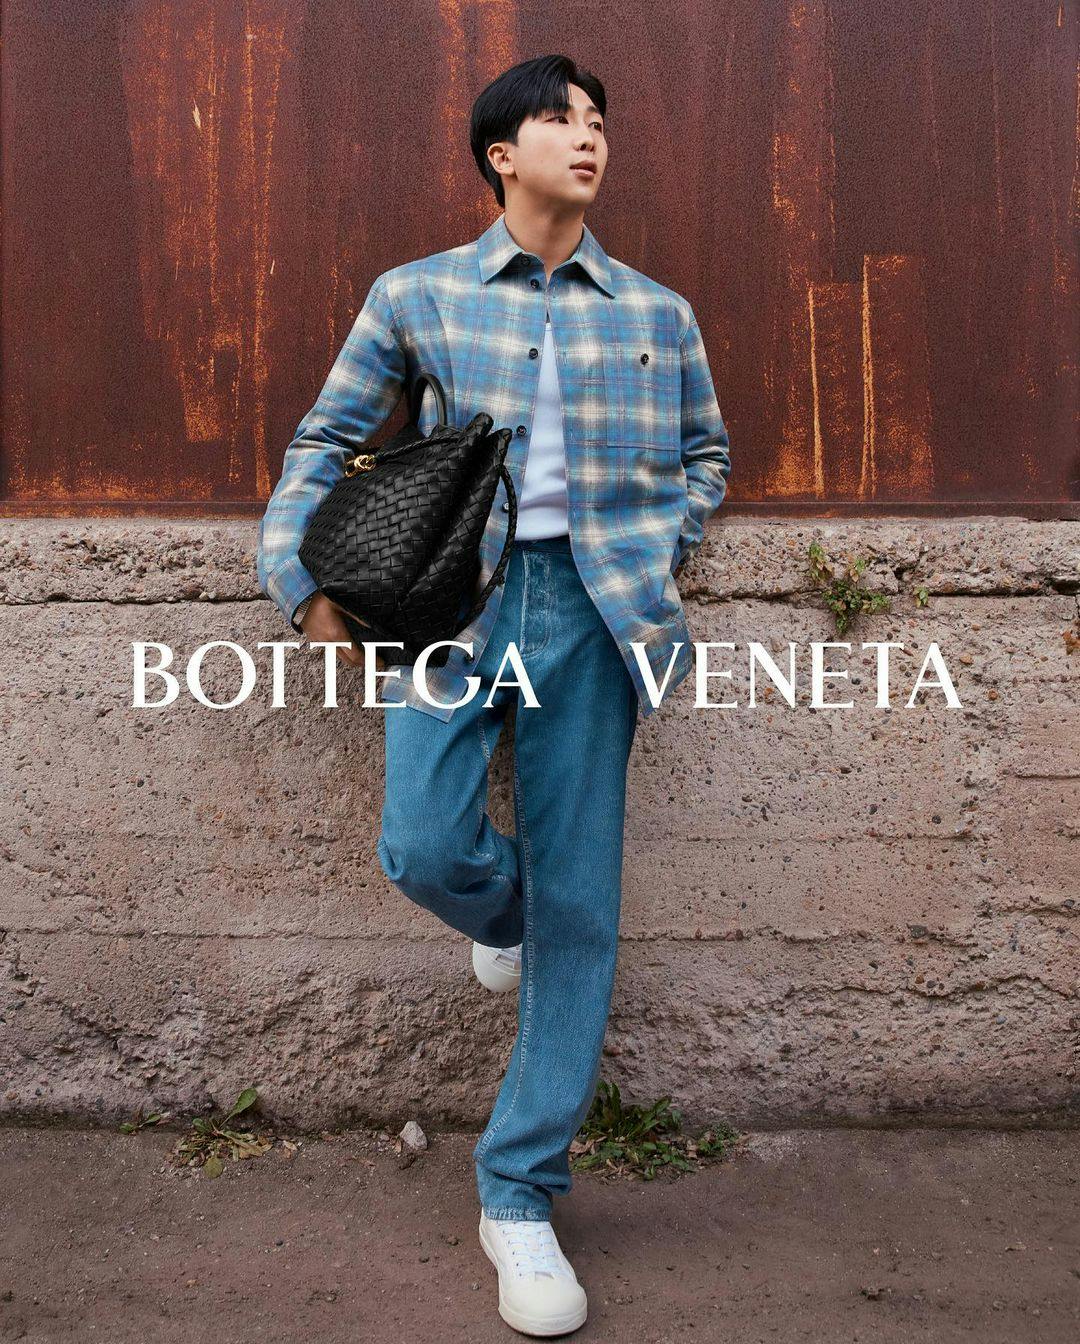 Bottega Veneta Brand - An innovative Italian designer brand - Life